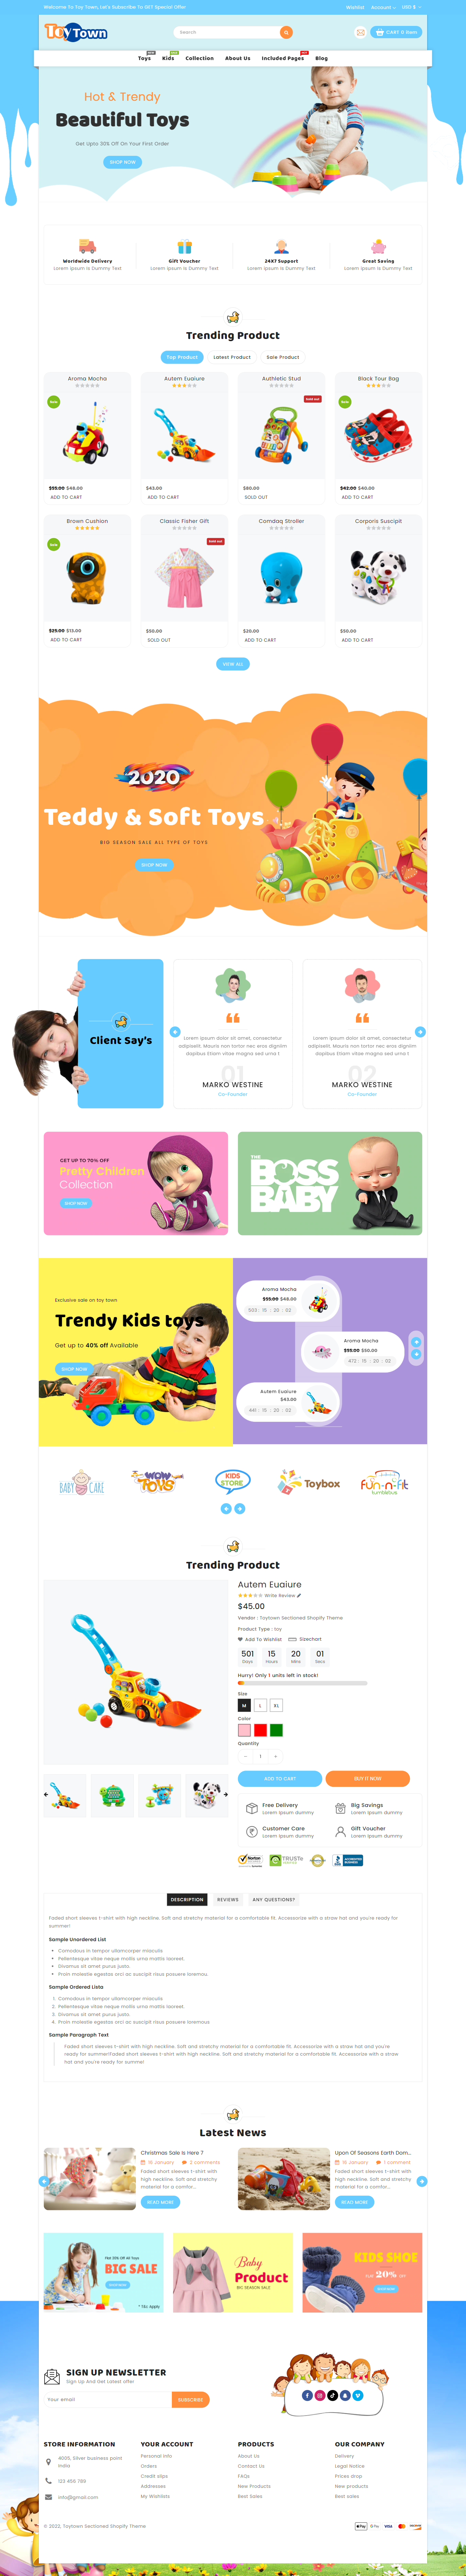 mẫu giao diện website cửa hàng trẻ em toytown